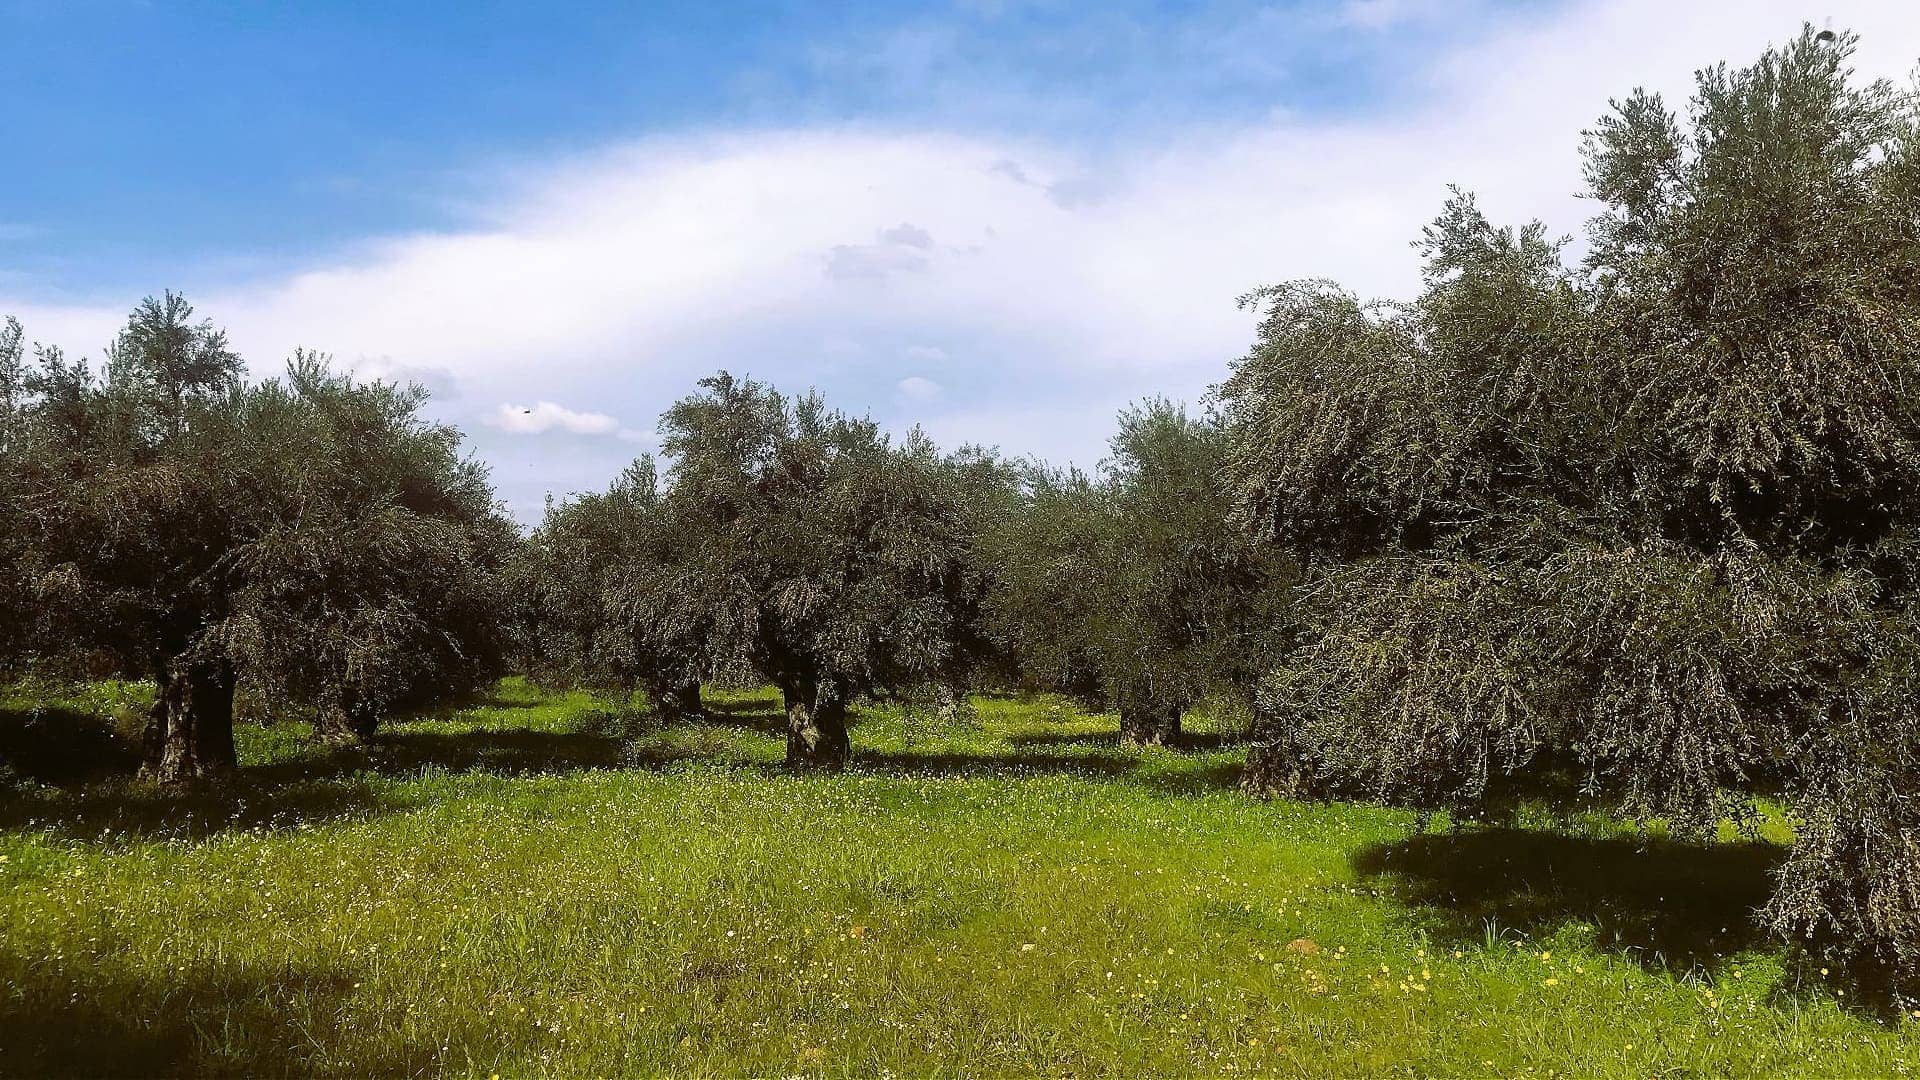 europa-profili-la-migliore-produzione-di-olio-di-oliva-il-premiato-produttore-greco-guarda-l-est-l-olio-di-oliva-tempi